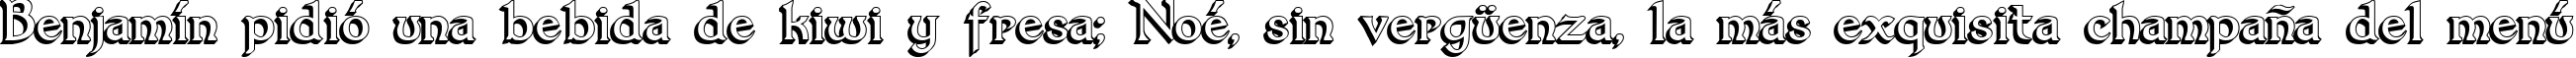 Пример написания шрифтом Dumbledor 3 3D текста на испанском